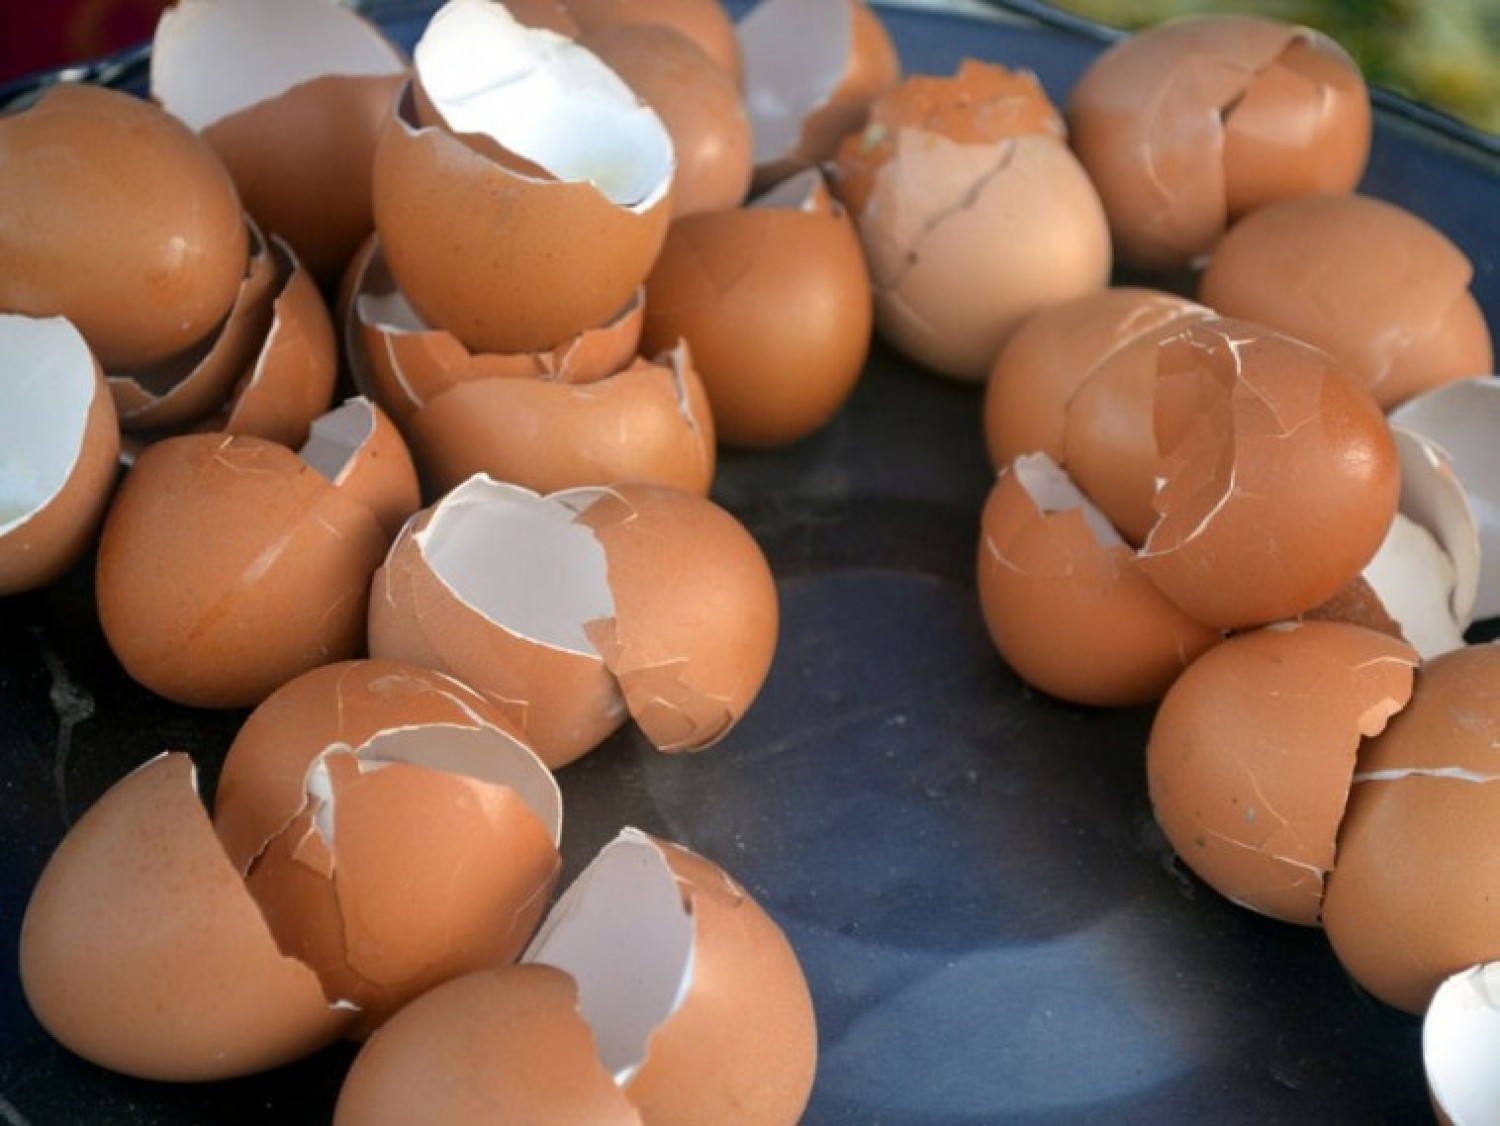 Vétek kidobni  a tojáshéjat - inkább használjuk fel a kertben